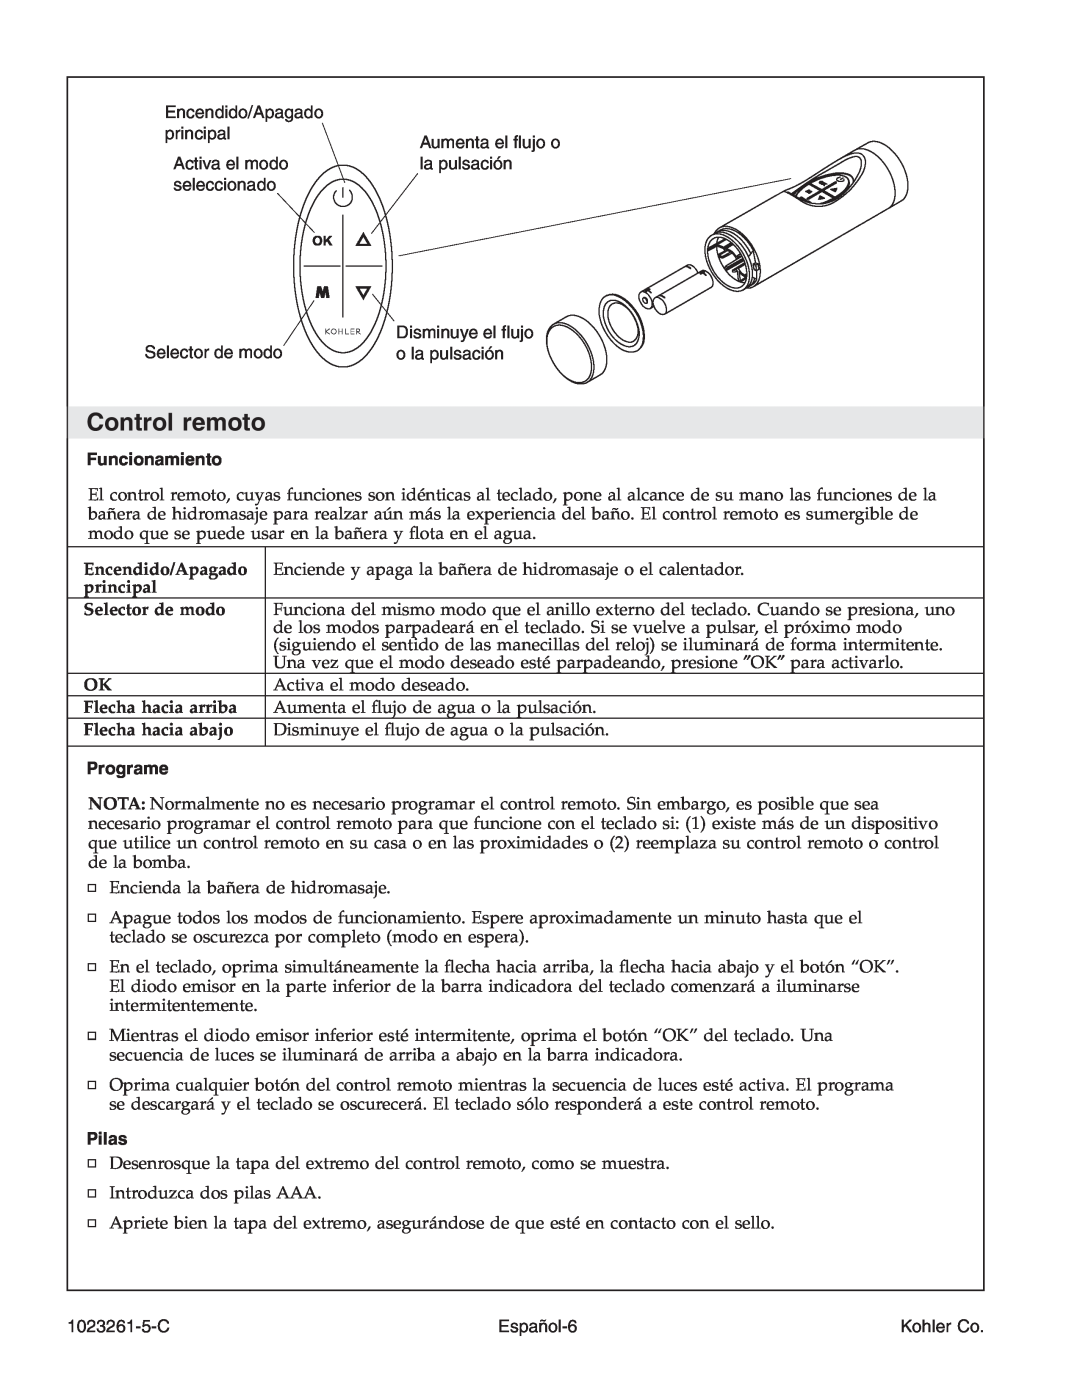 Kohler K-1110-CT manual Control remoto, Funcionamiento, Programe, Pilas 